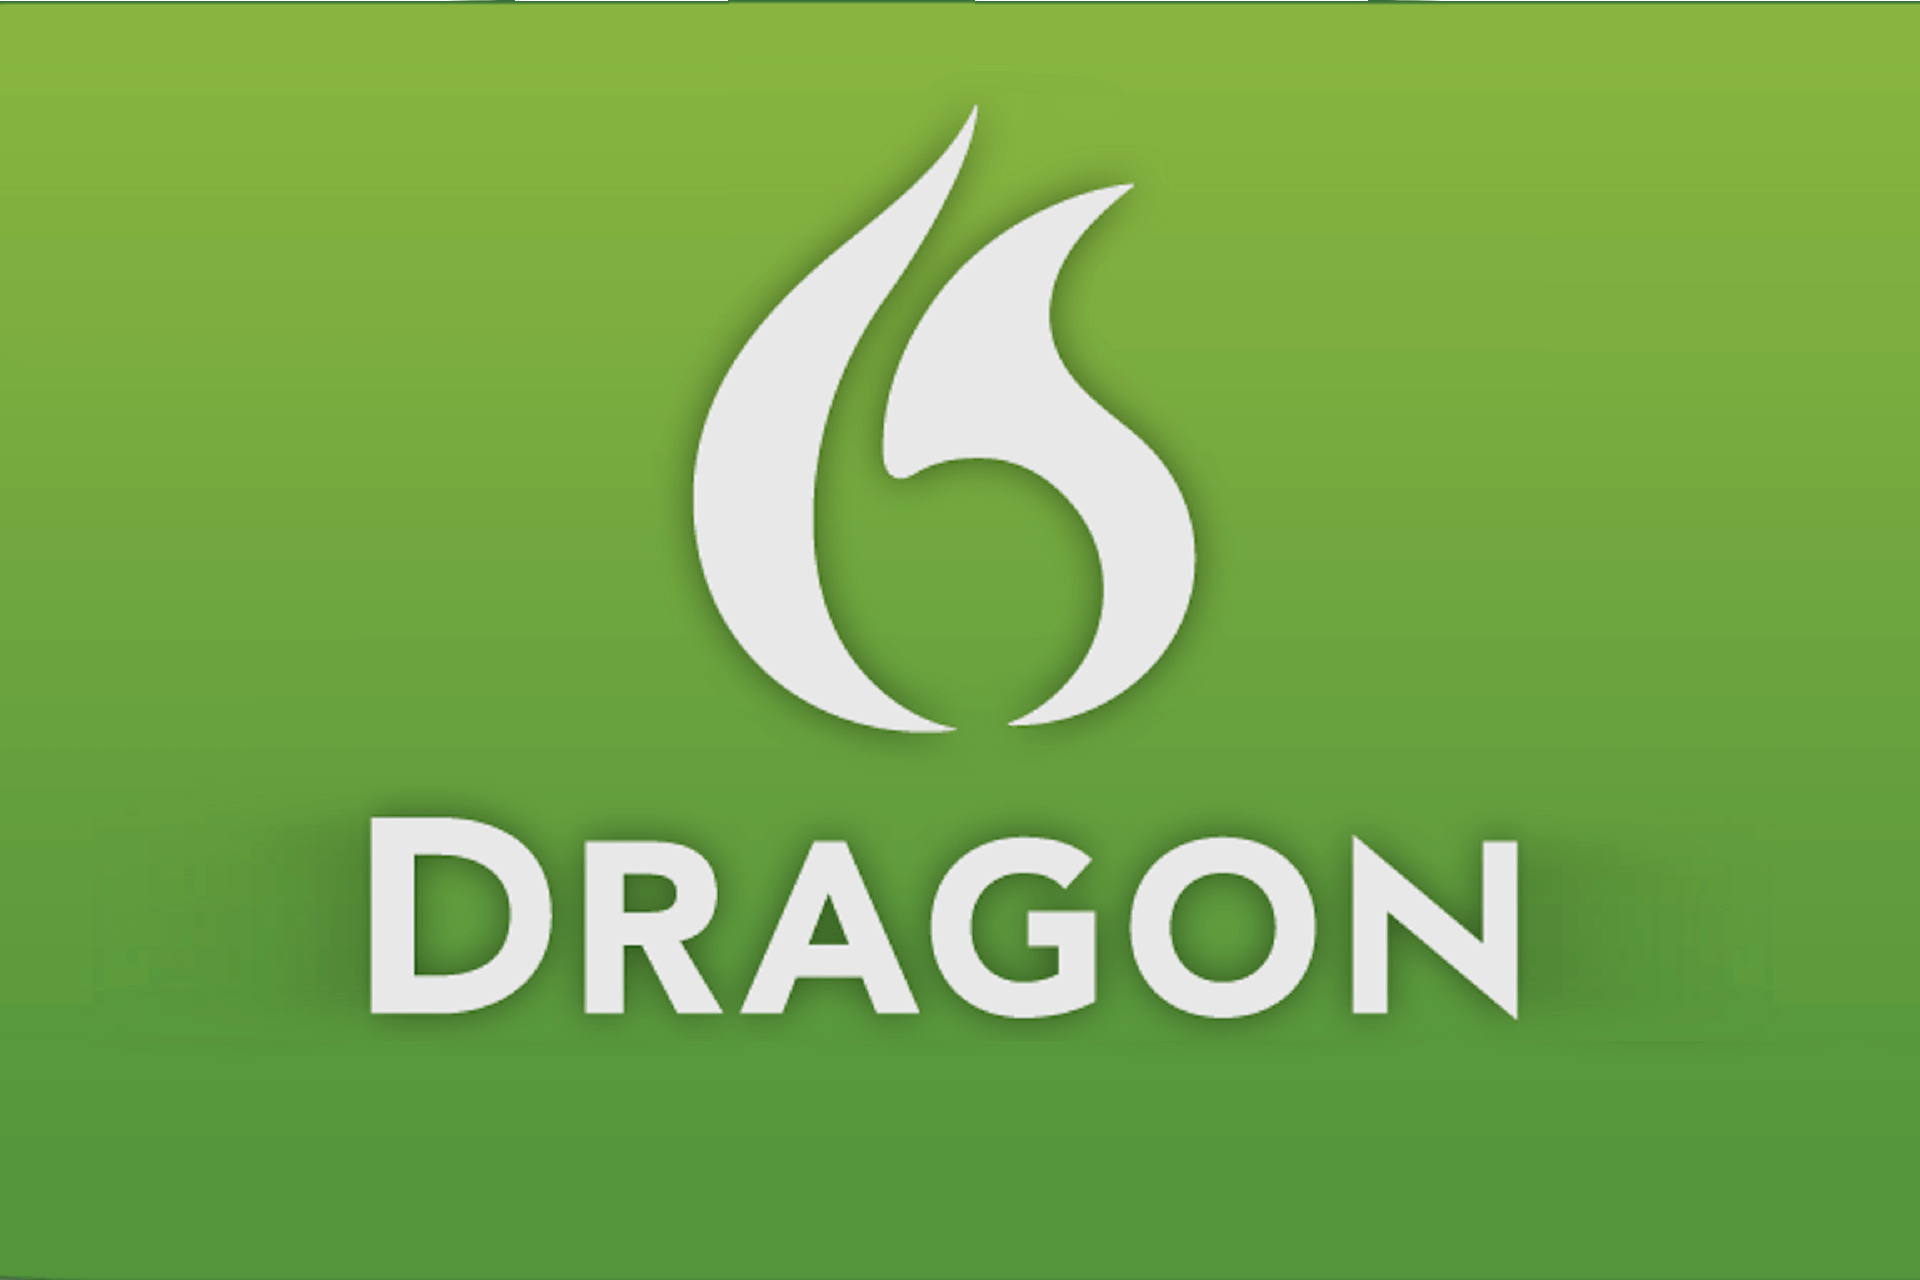 Dragon Naturally Speaking 15.60 Crack con chiave seriale 2022 [Più recente]